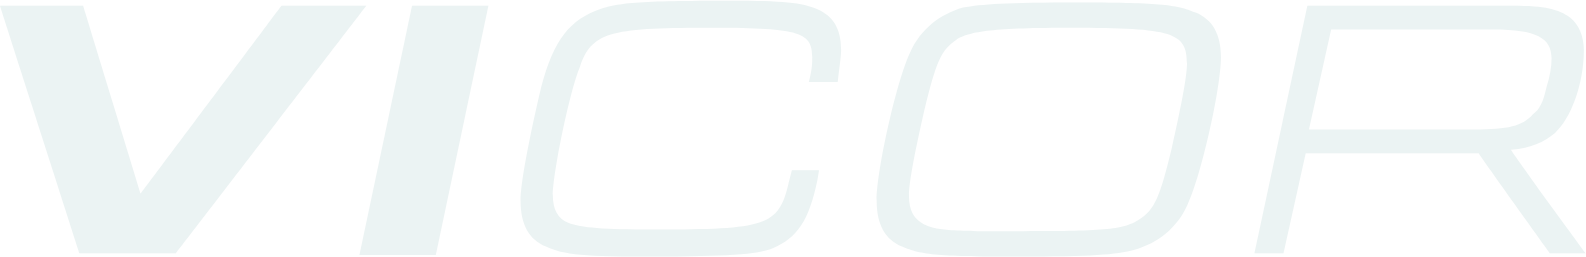 Vicor
 logo large for dark backgrounds (transparent PNG)